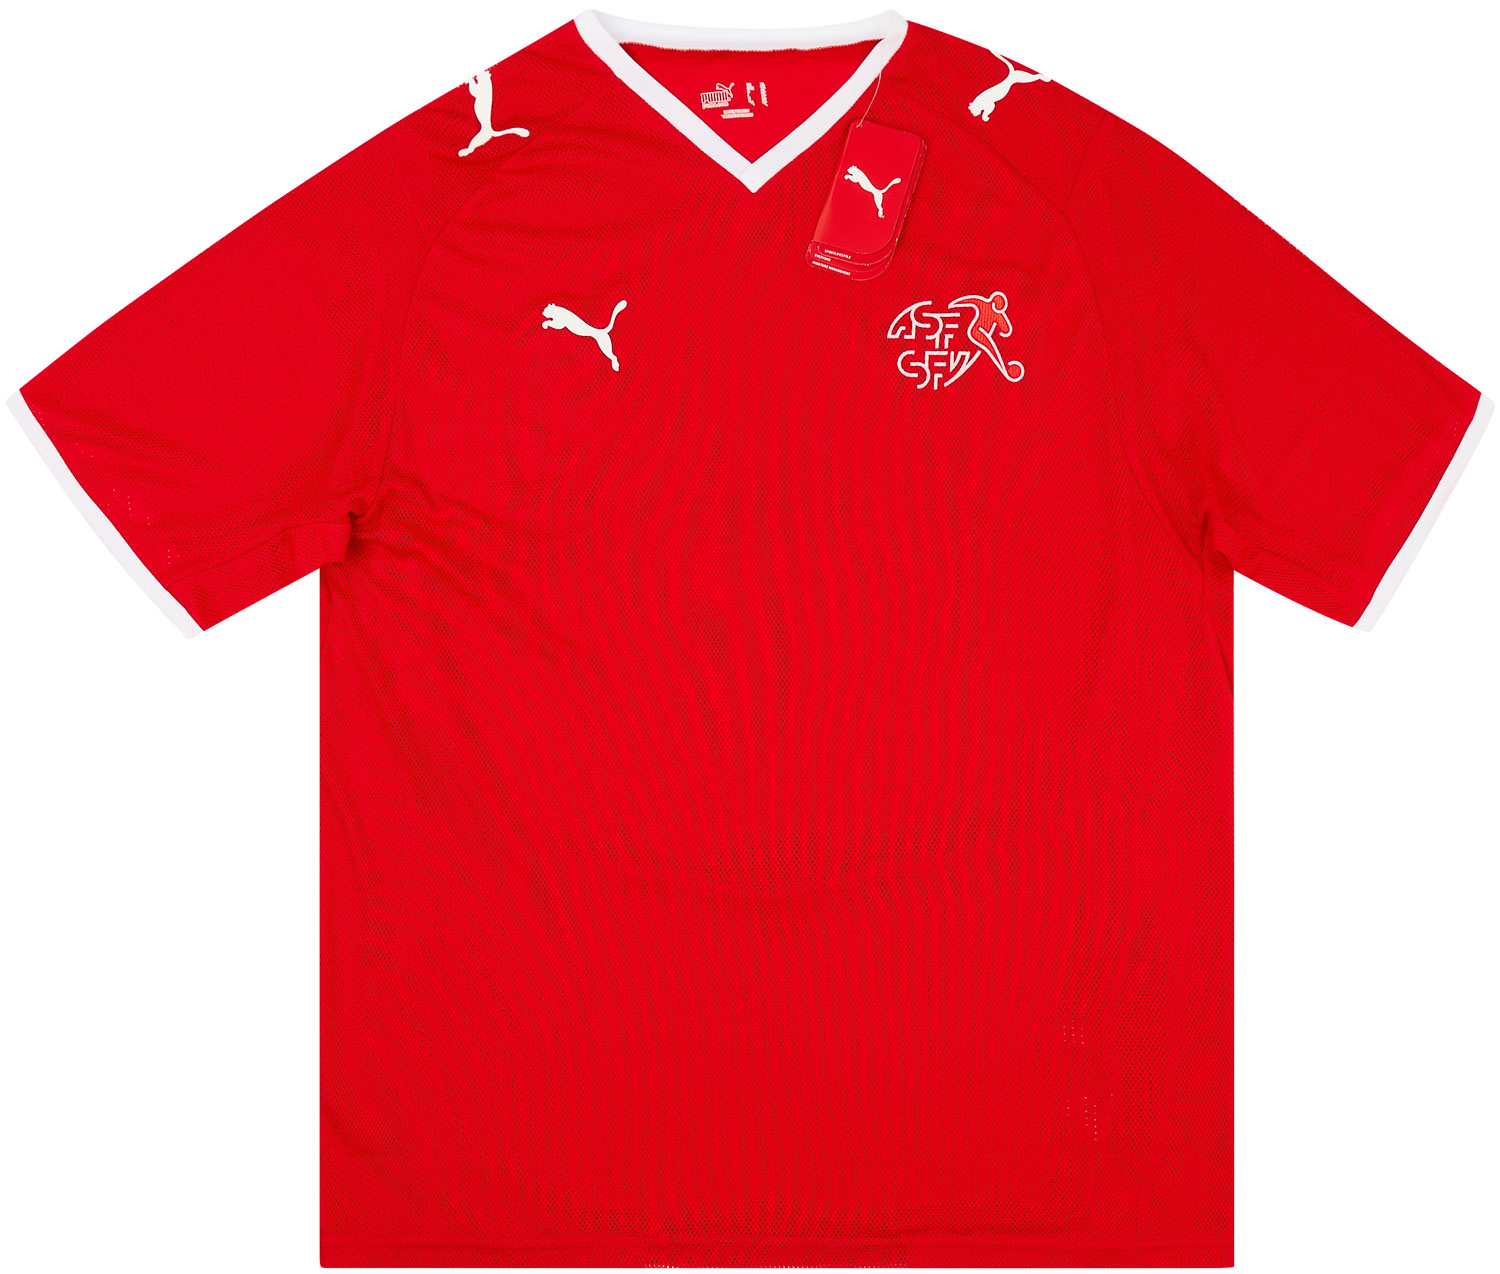 2008-10 Switzerland Home Shirt